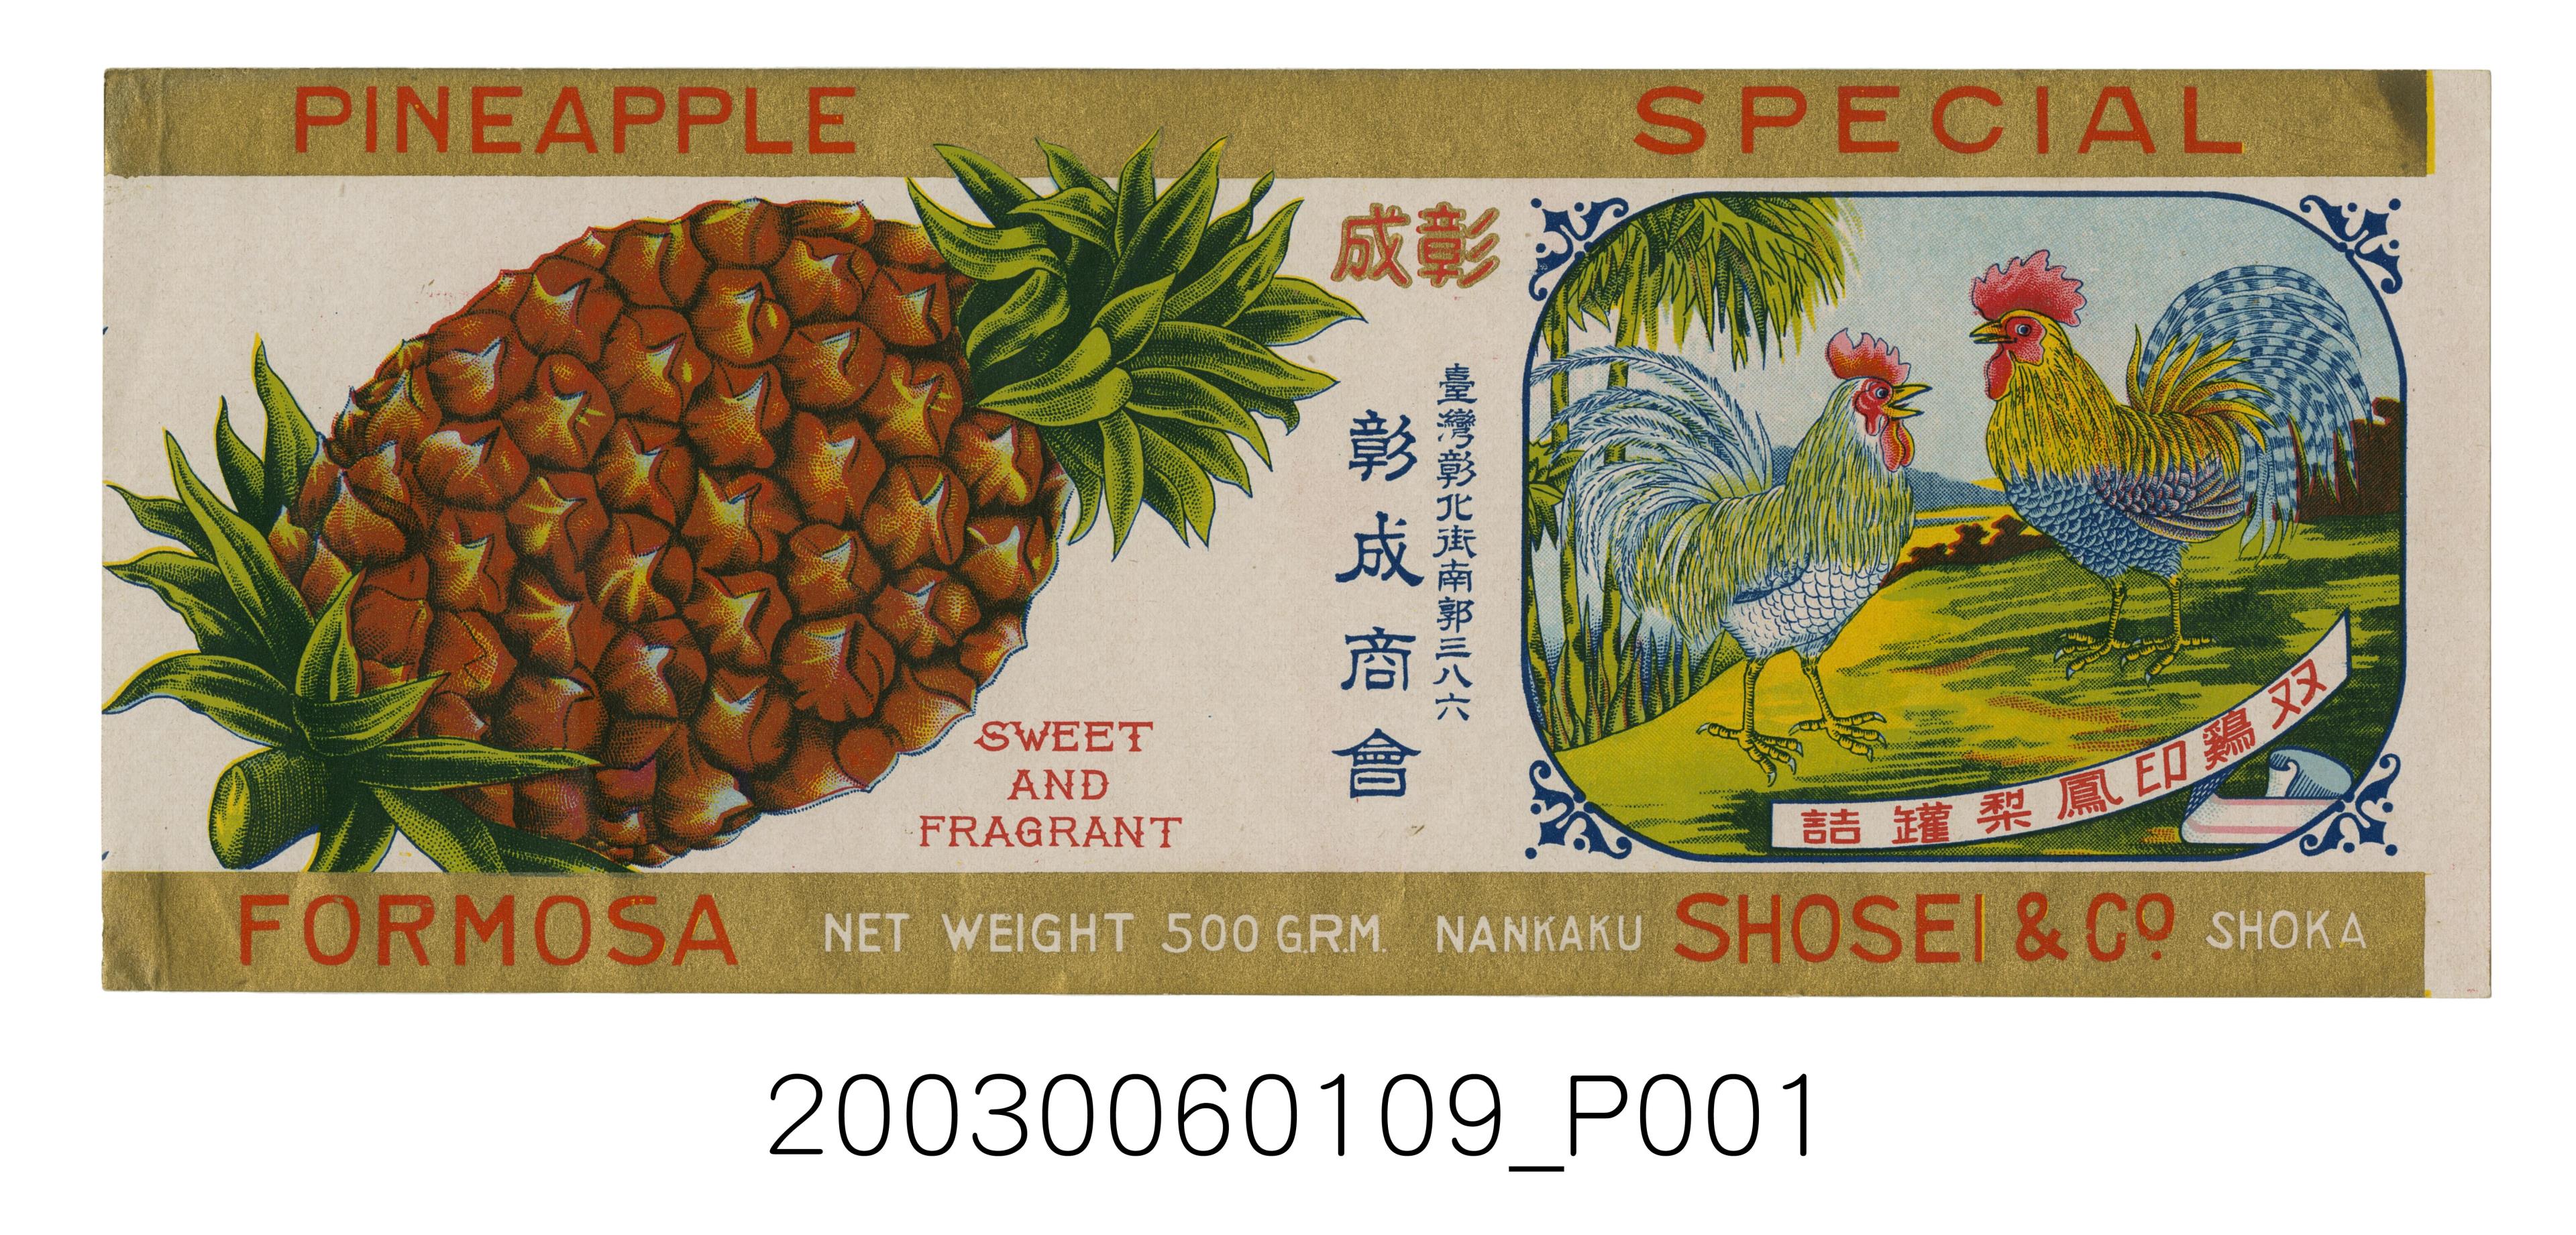 彰成商會鳳梨罐頭商標紙 (共1張)